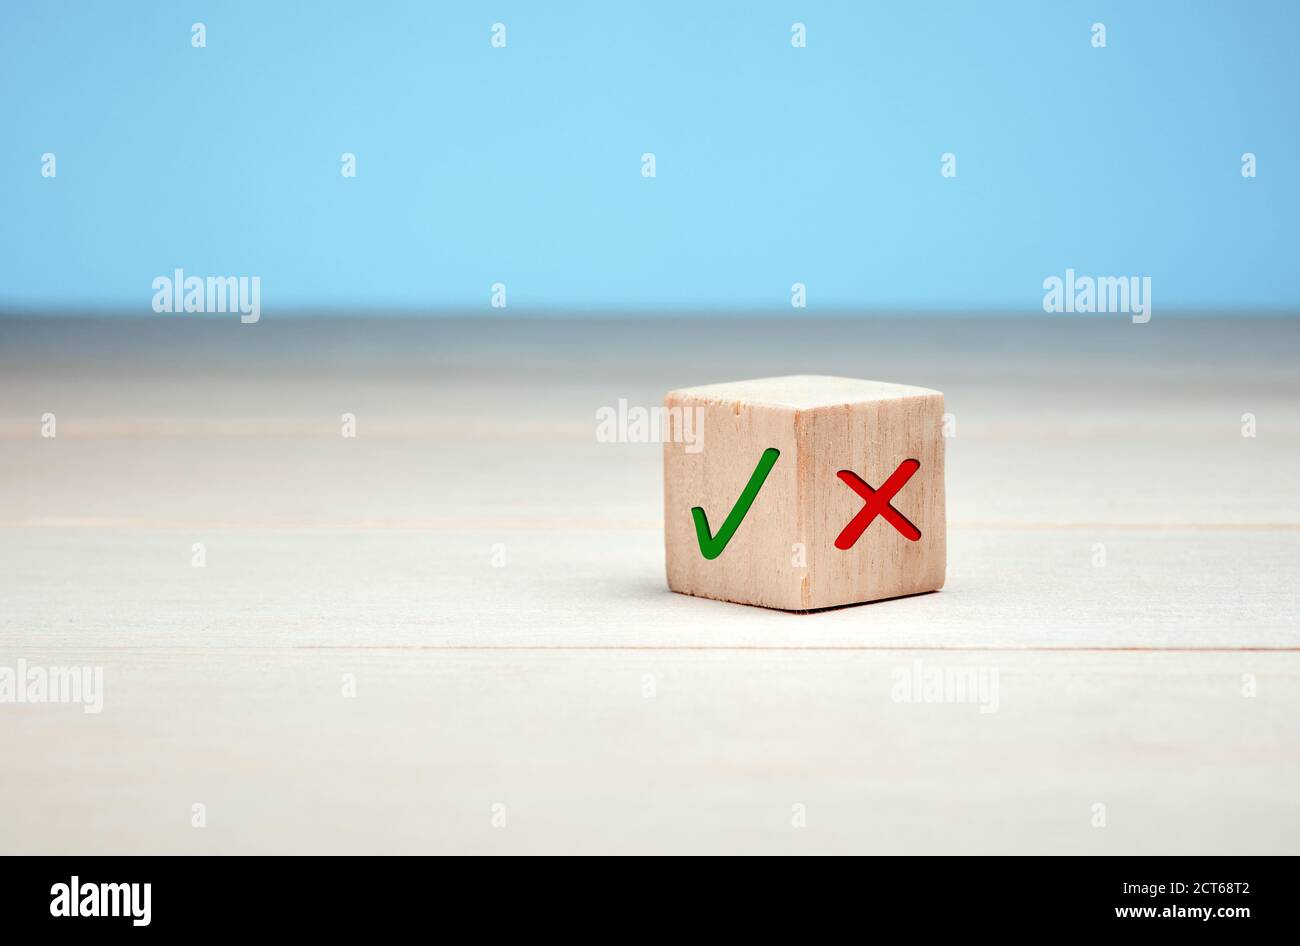 Blocco di legno con segno di spunta verde e rosso x. Concetto di scelta e di decisione. Foto Stock